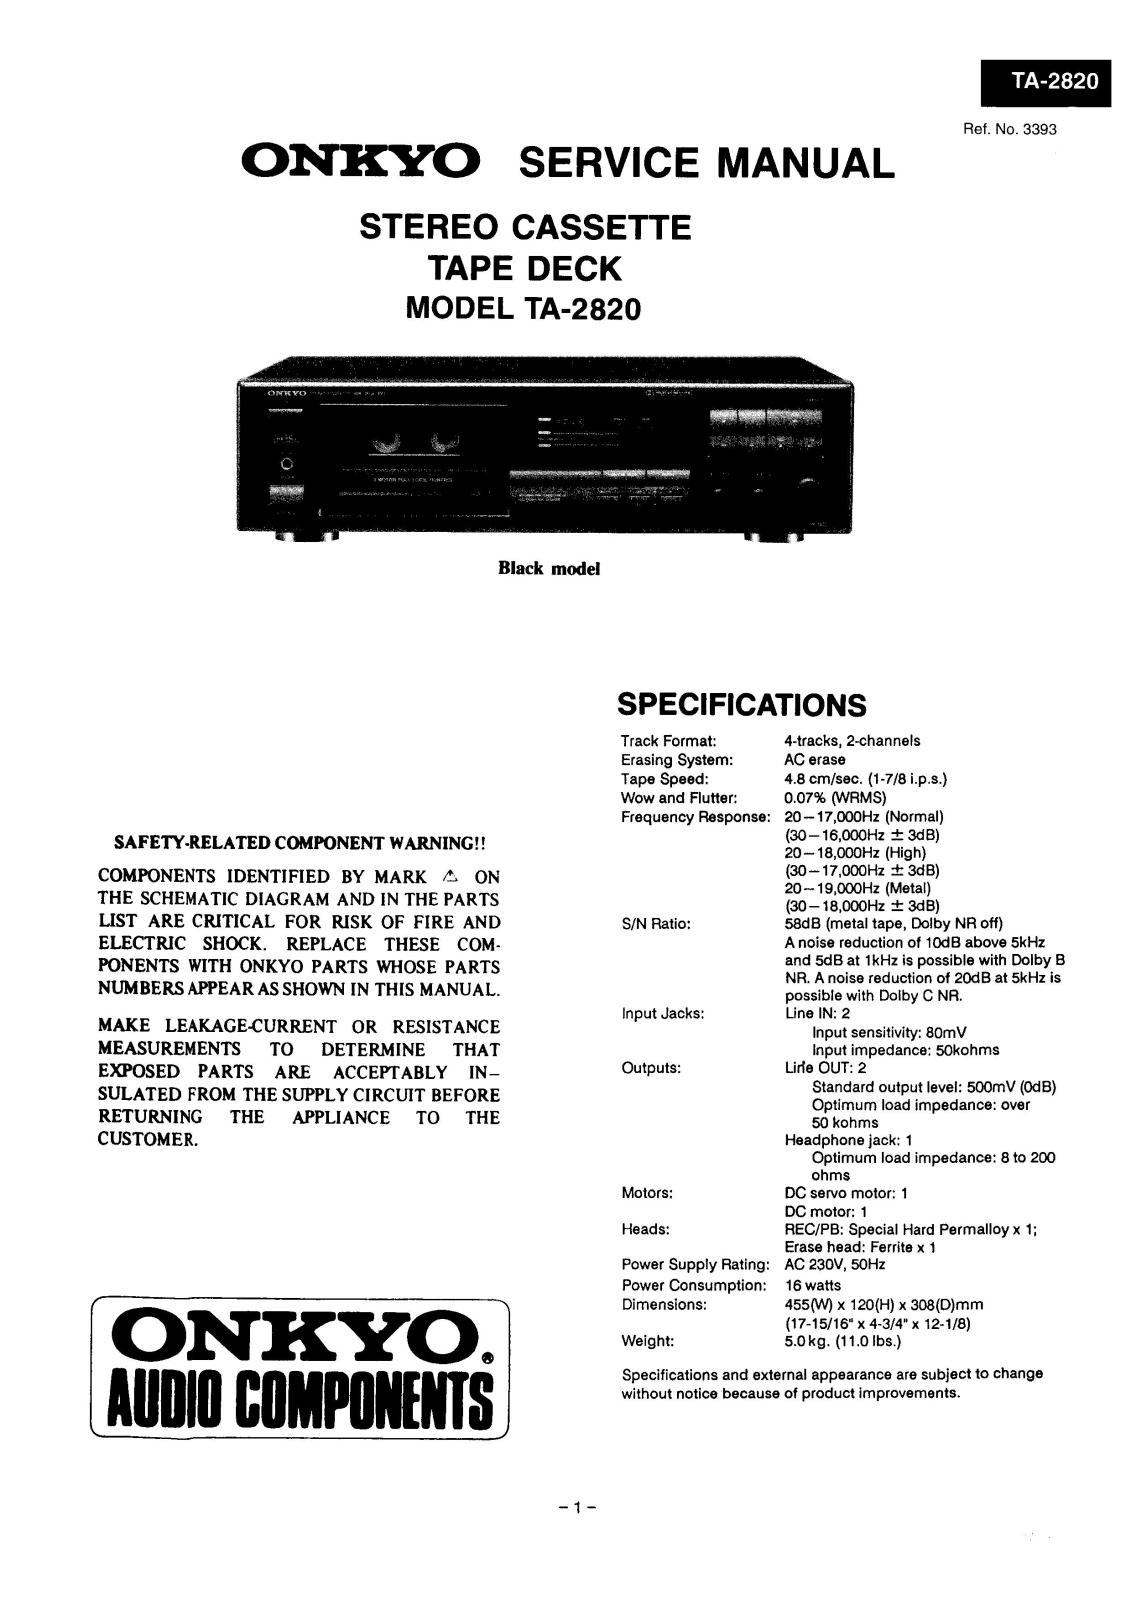 Onkyo ta-2820 Service Manual